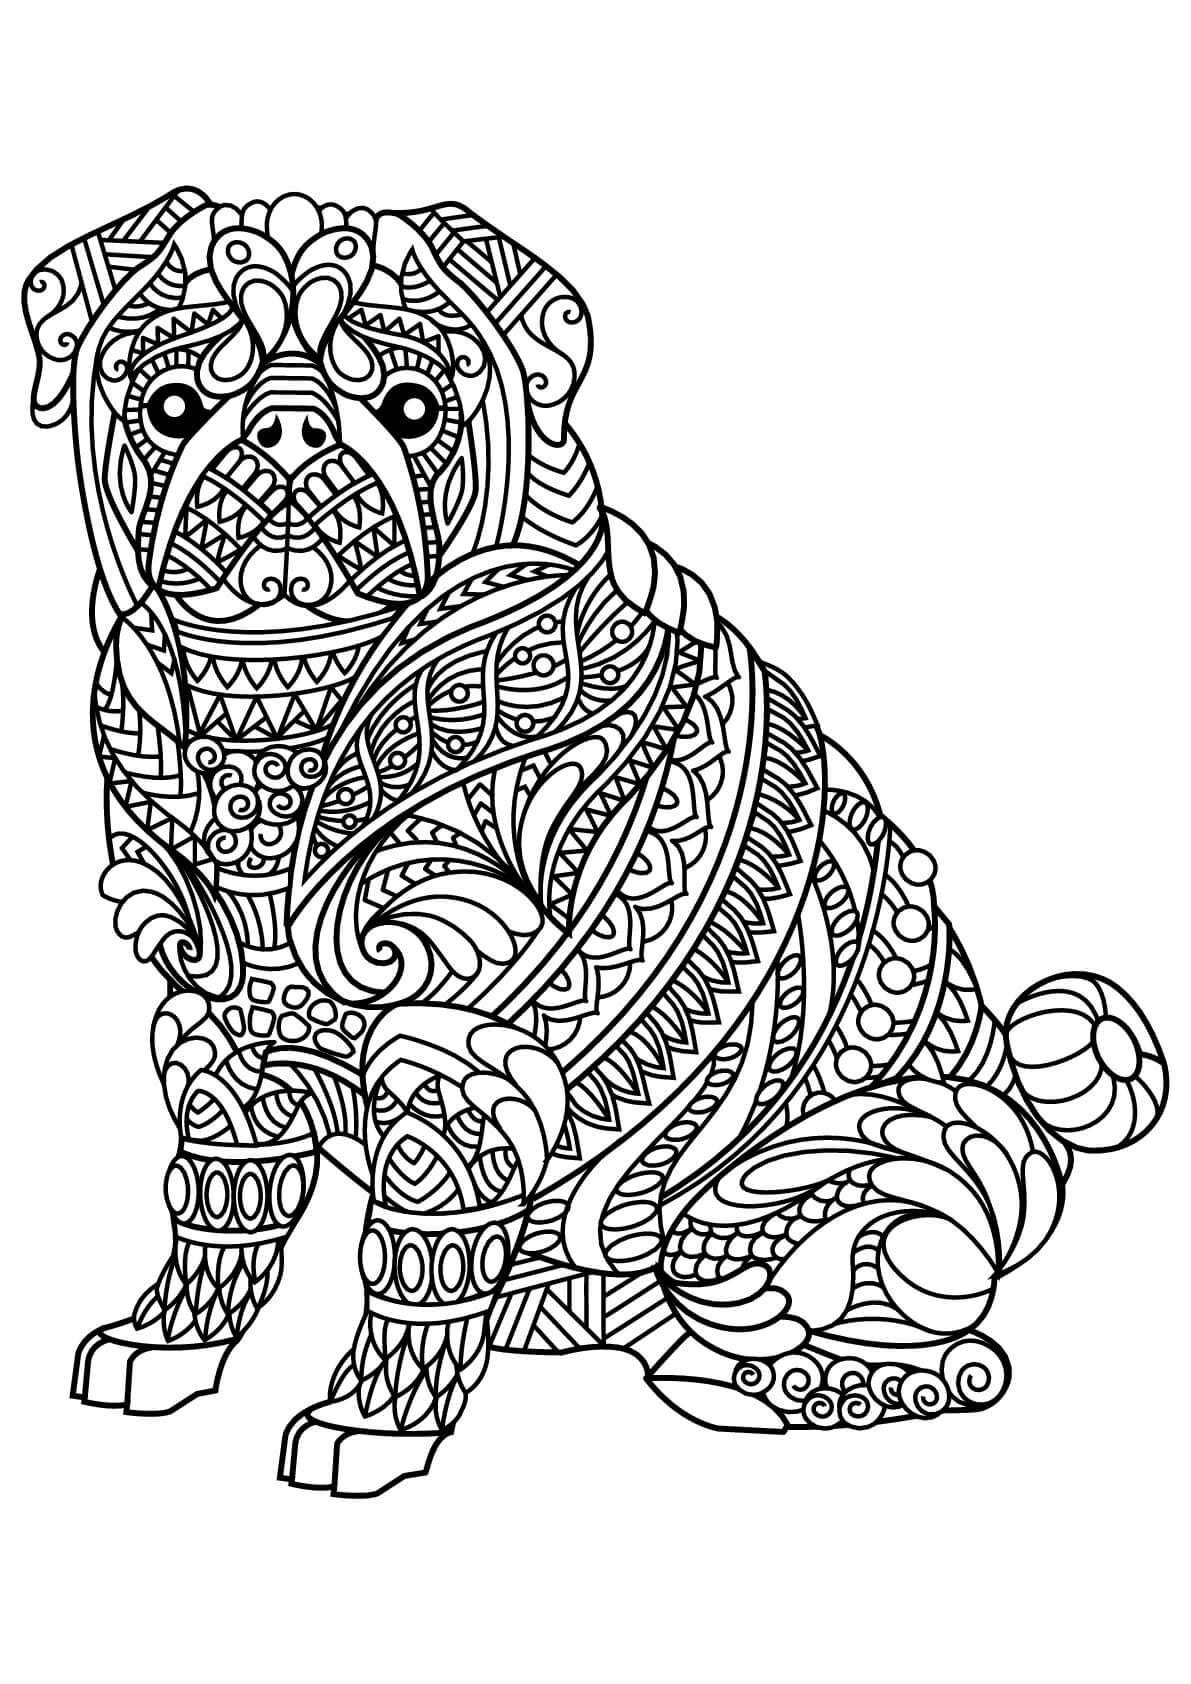 Dibujos de Bulldog es para Adulto para colorear